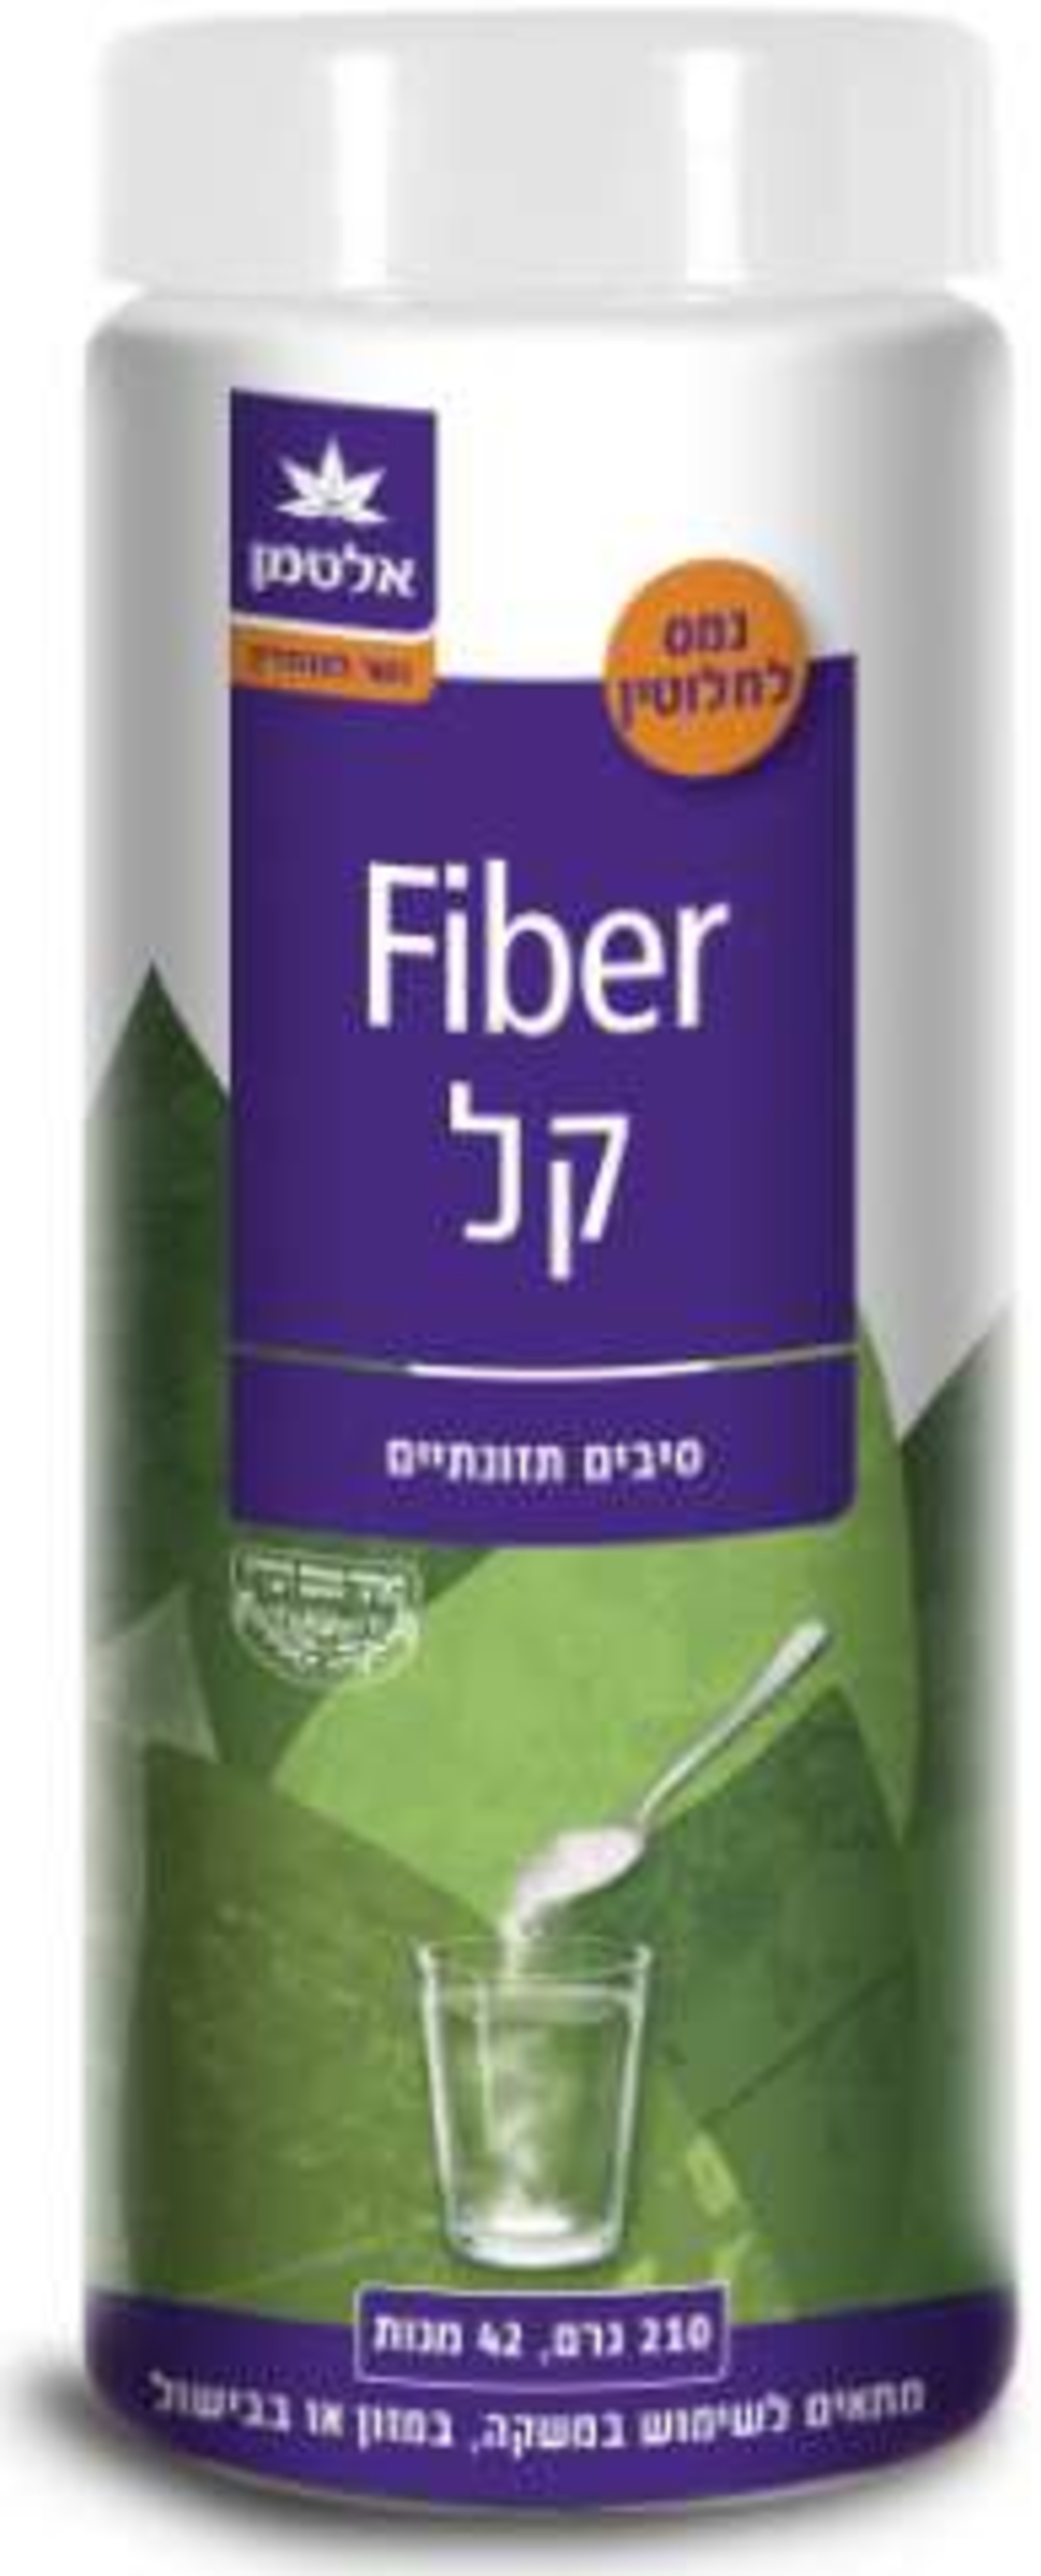 פייבר קל אלטמן - אבקת סיבים תזונתיים Fiber Kal